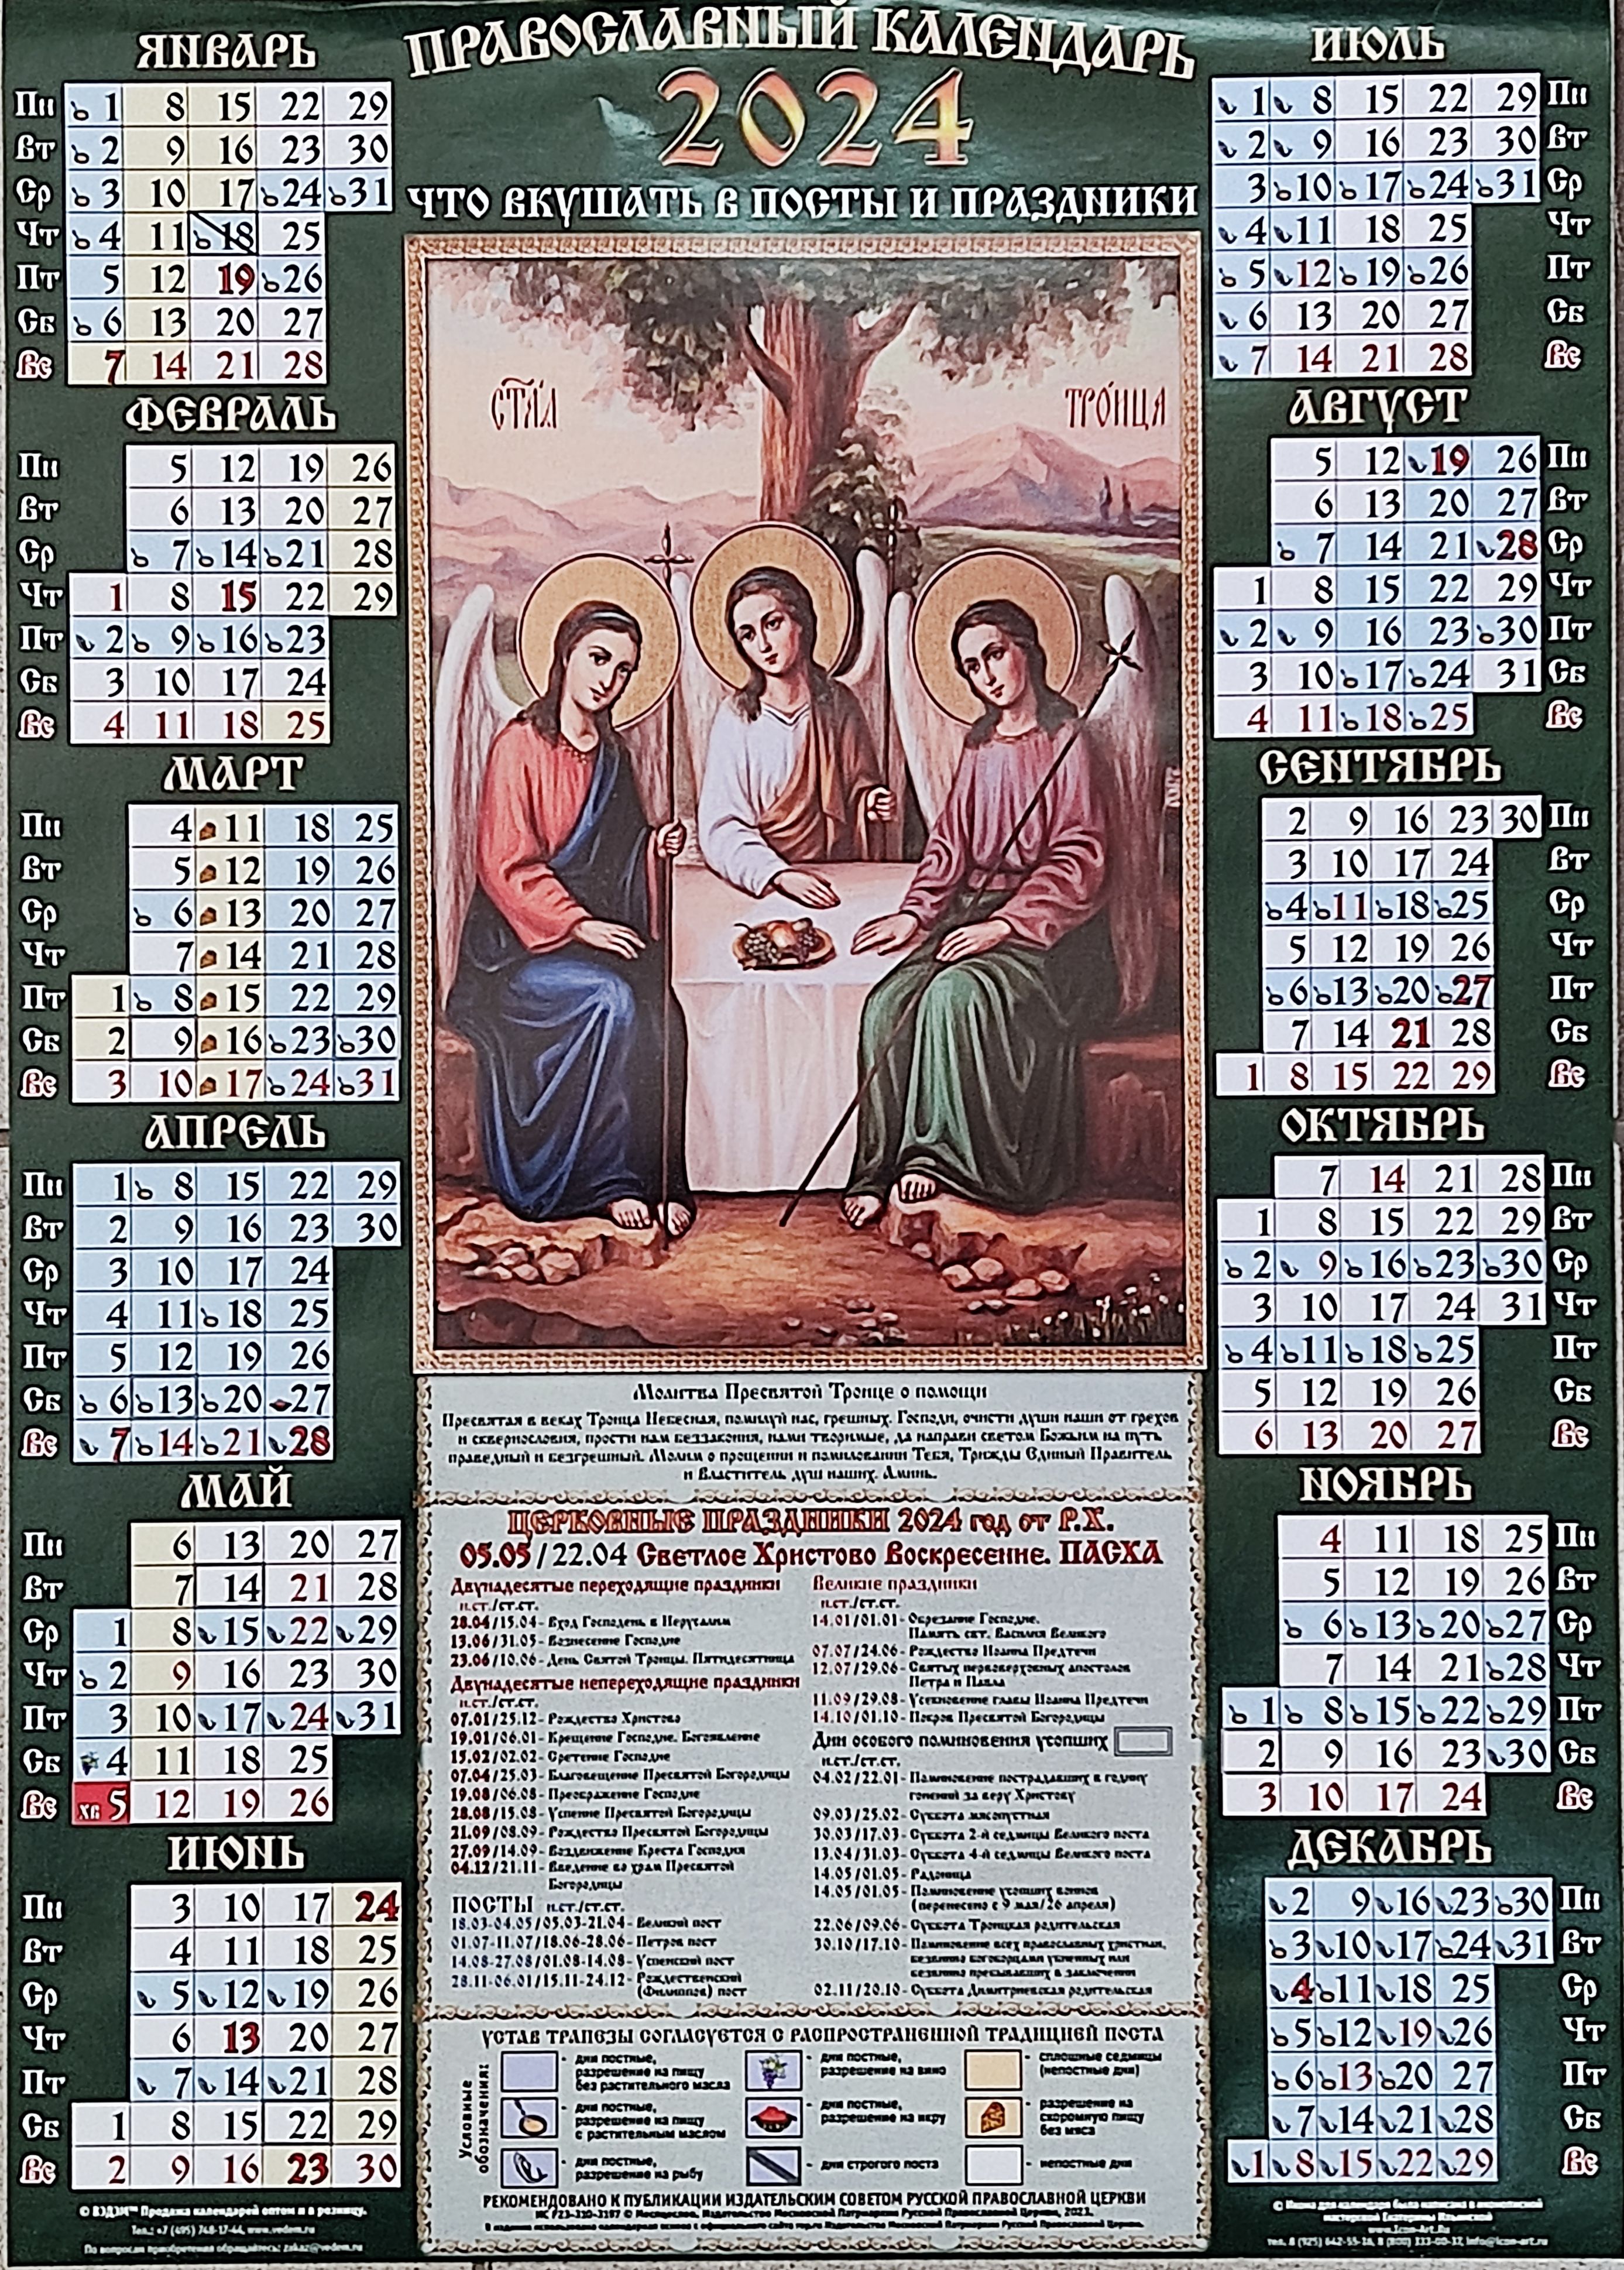 21 апреля 2024 православный календарь